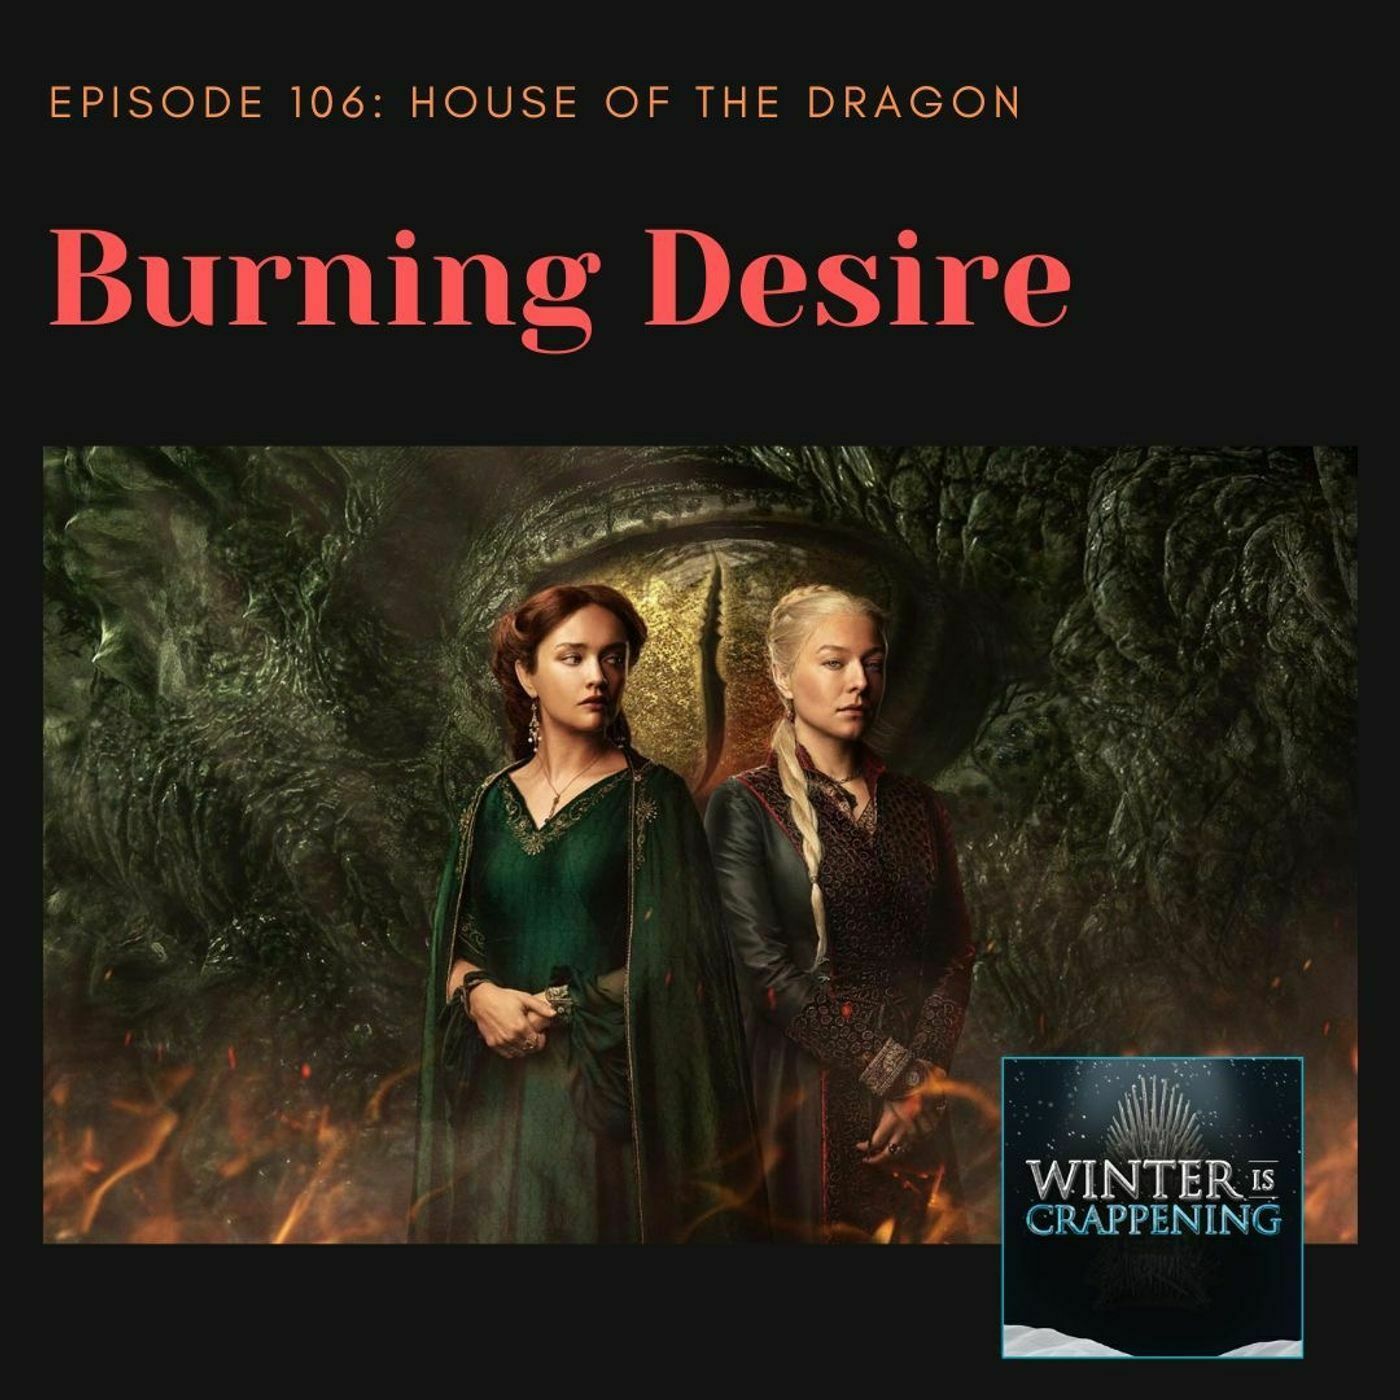 HOTD #106: Burning Desire